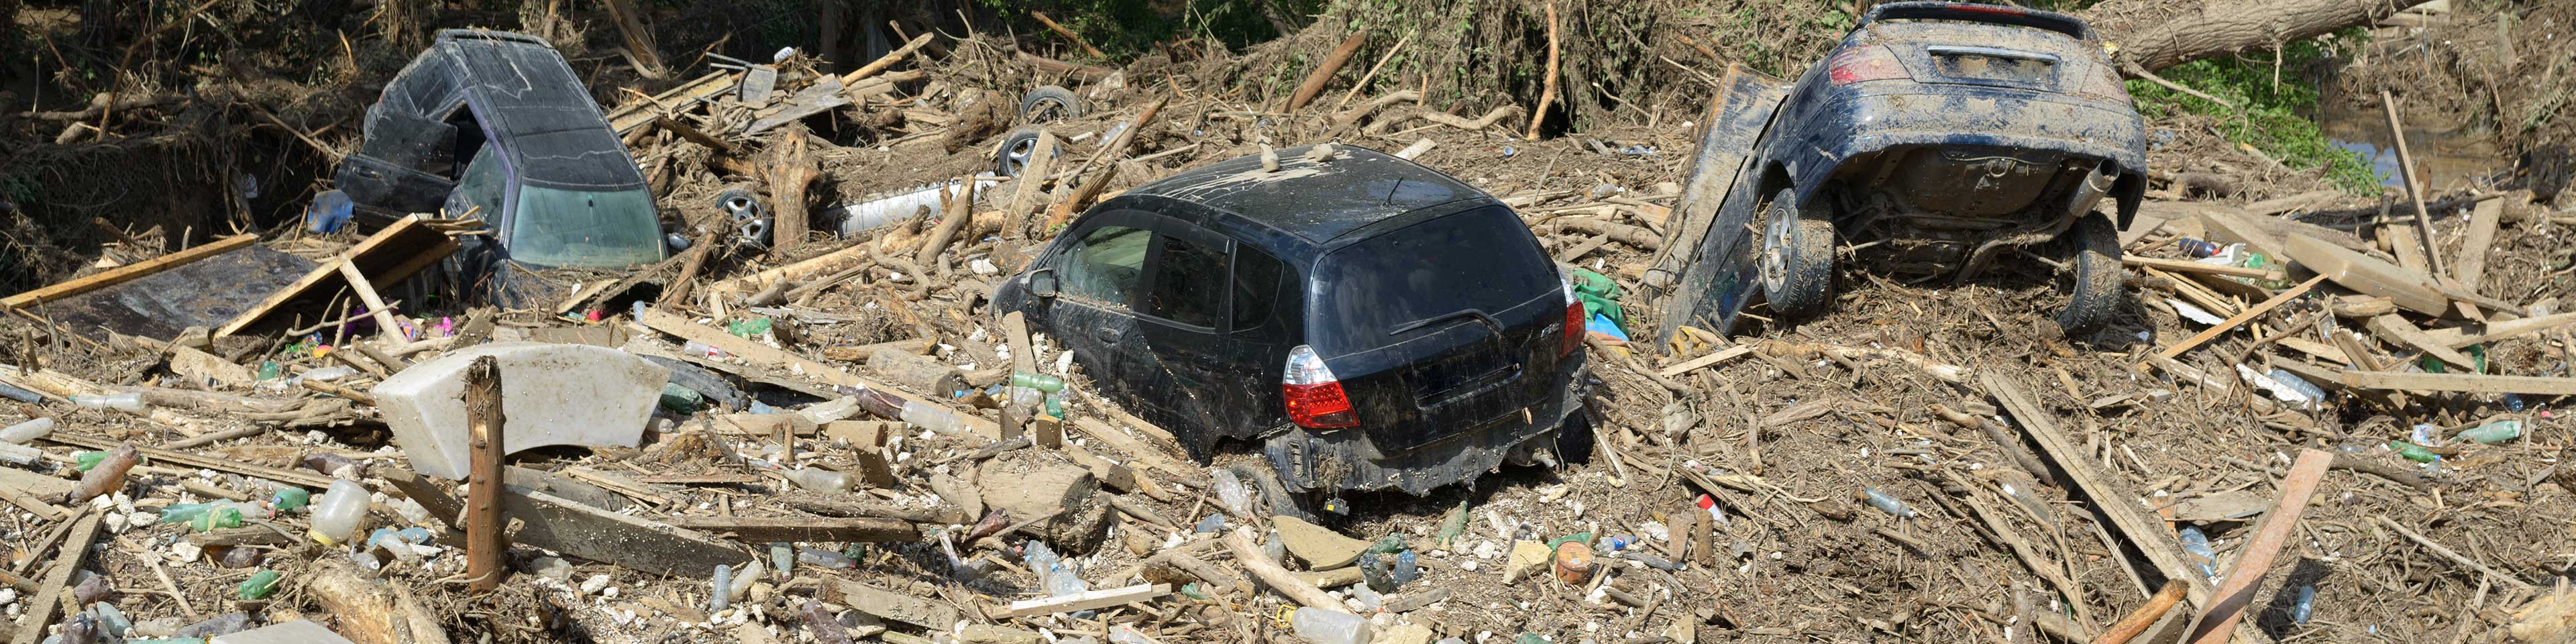 Cars buried in landslide